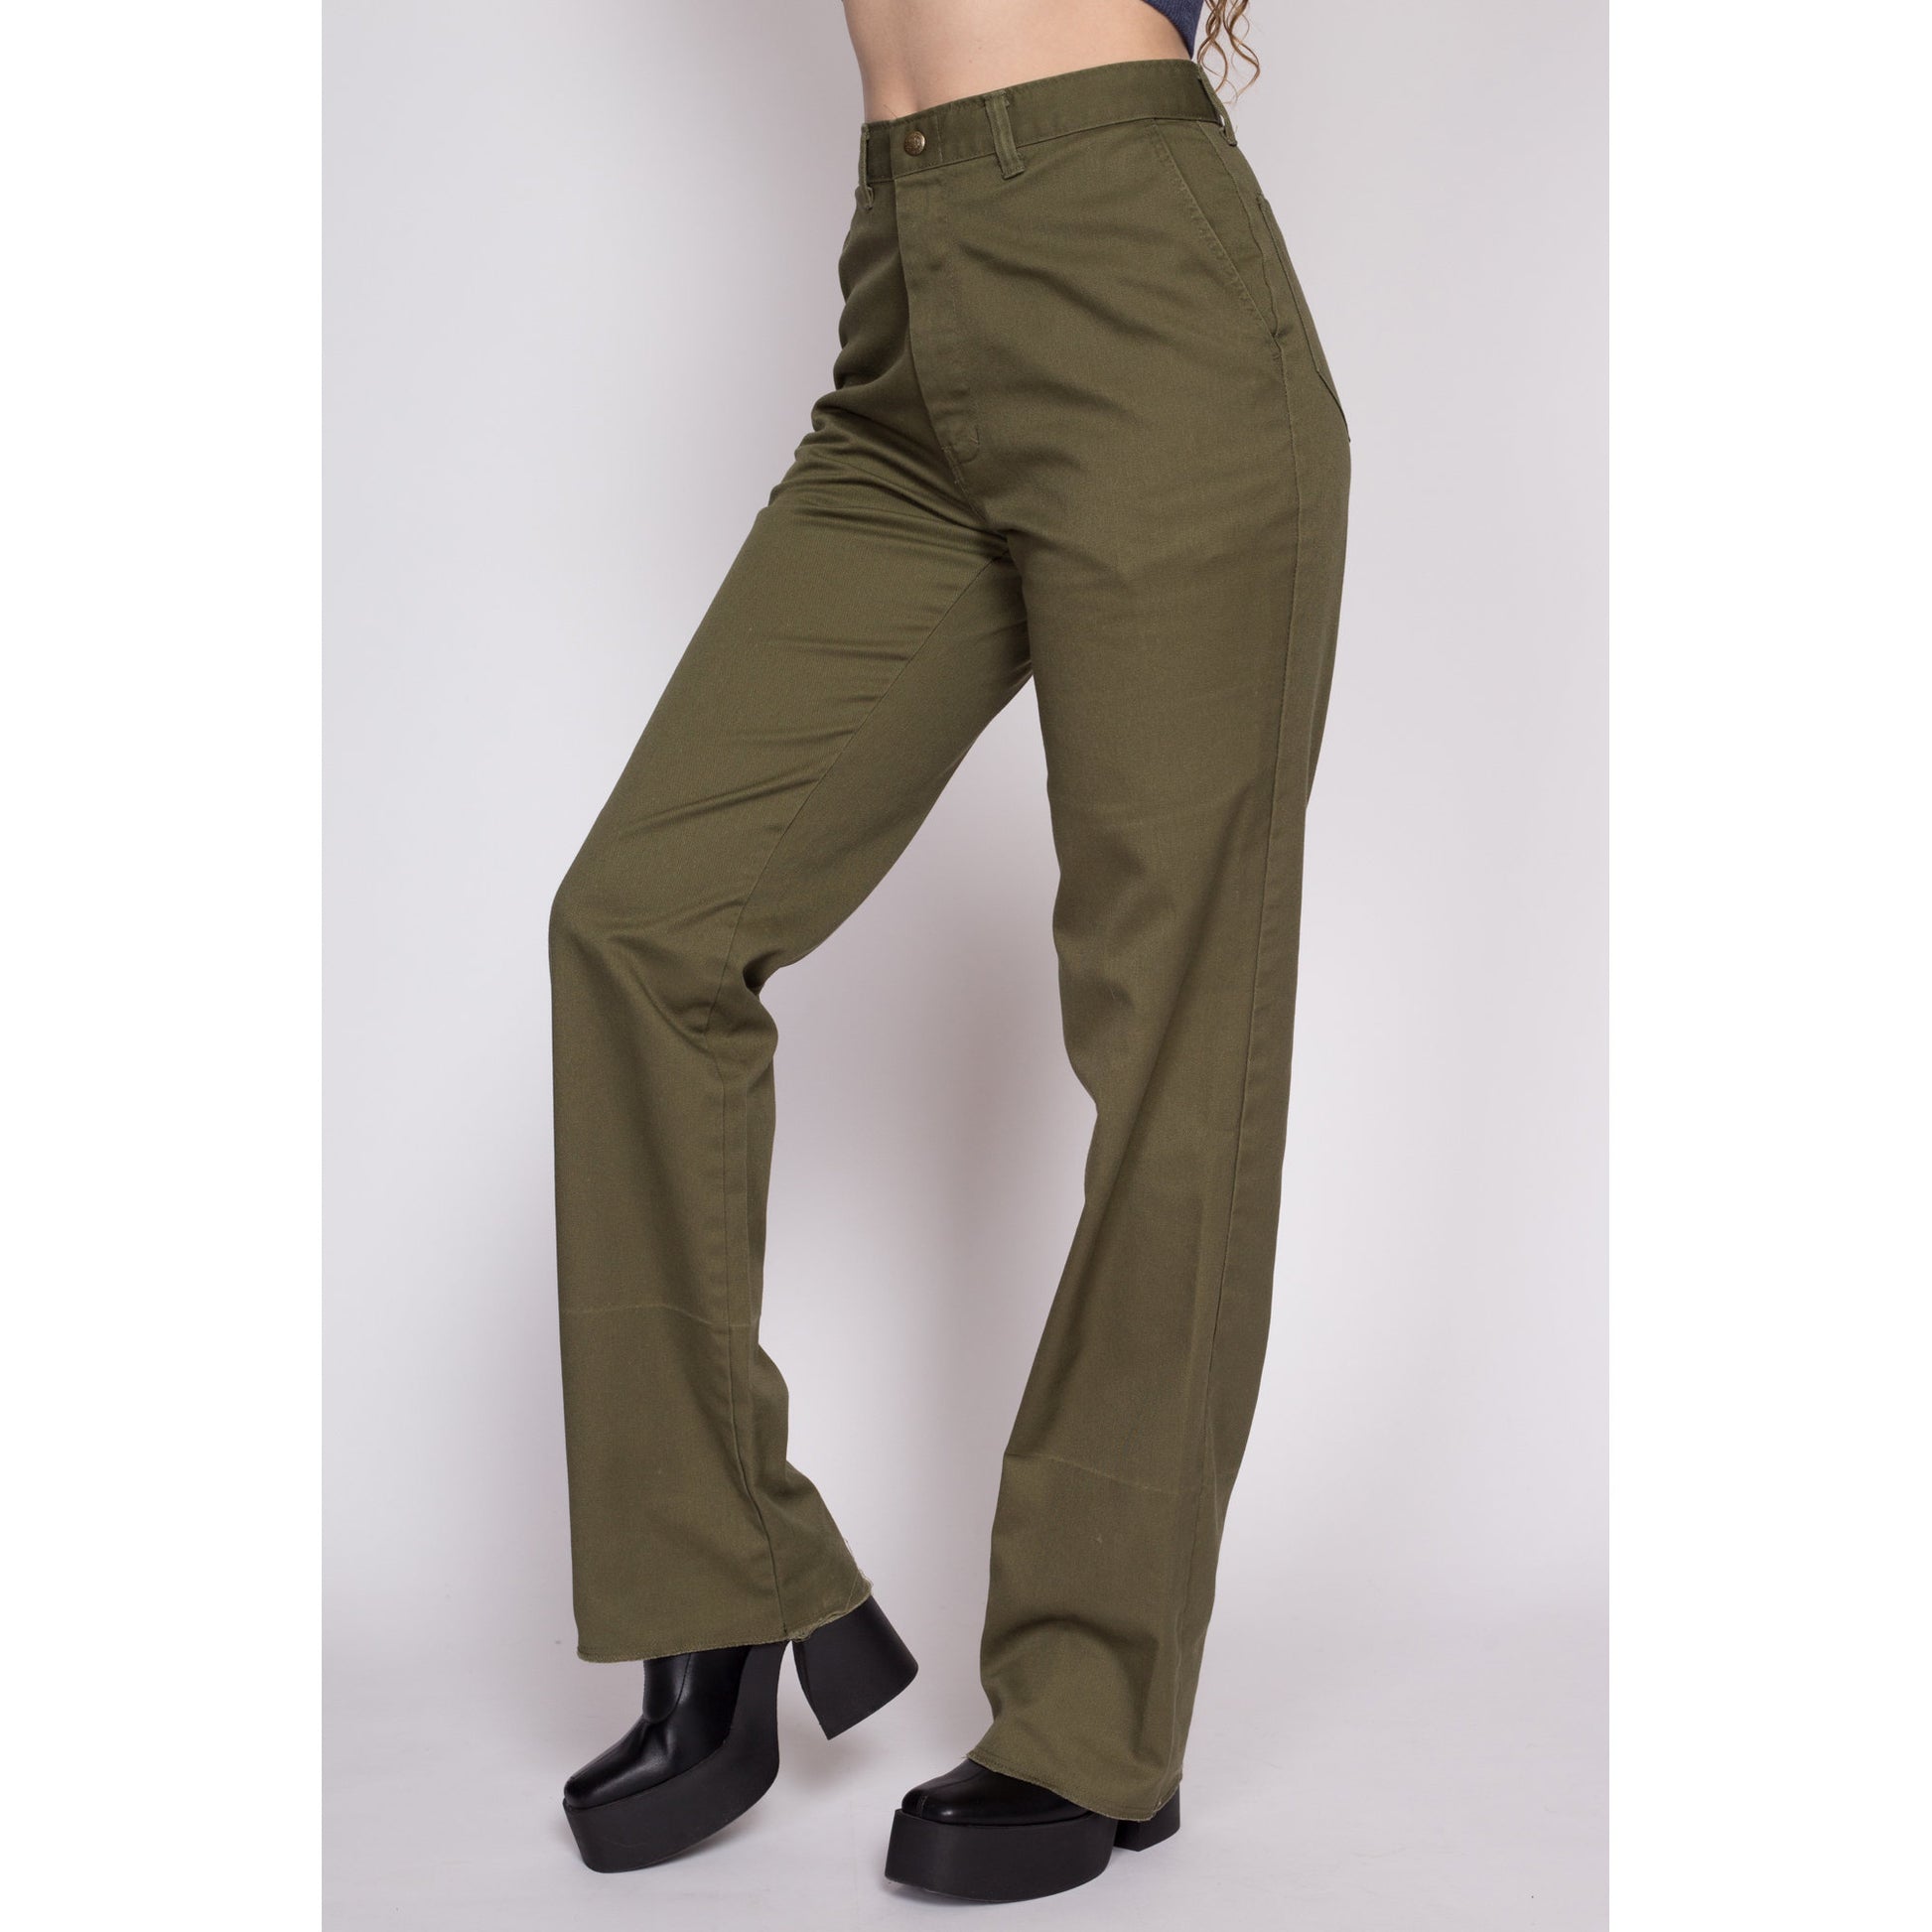 70s Boy Scout Uniform Pants - Men's Small, Women's Medium, 28.5